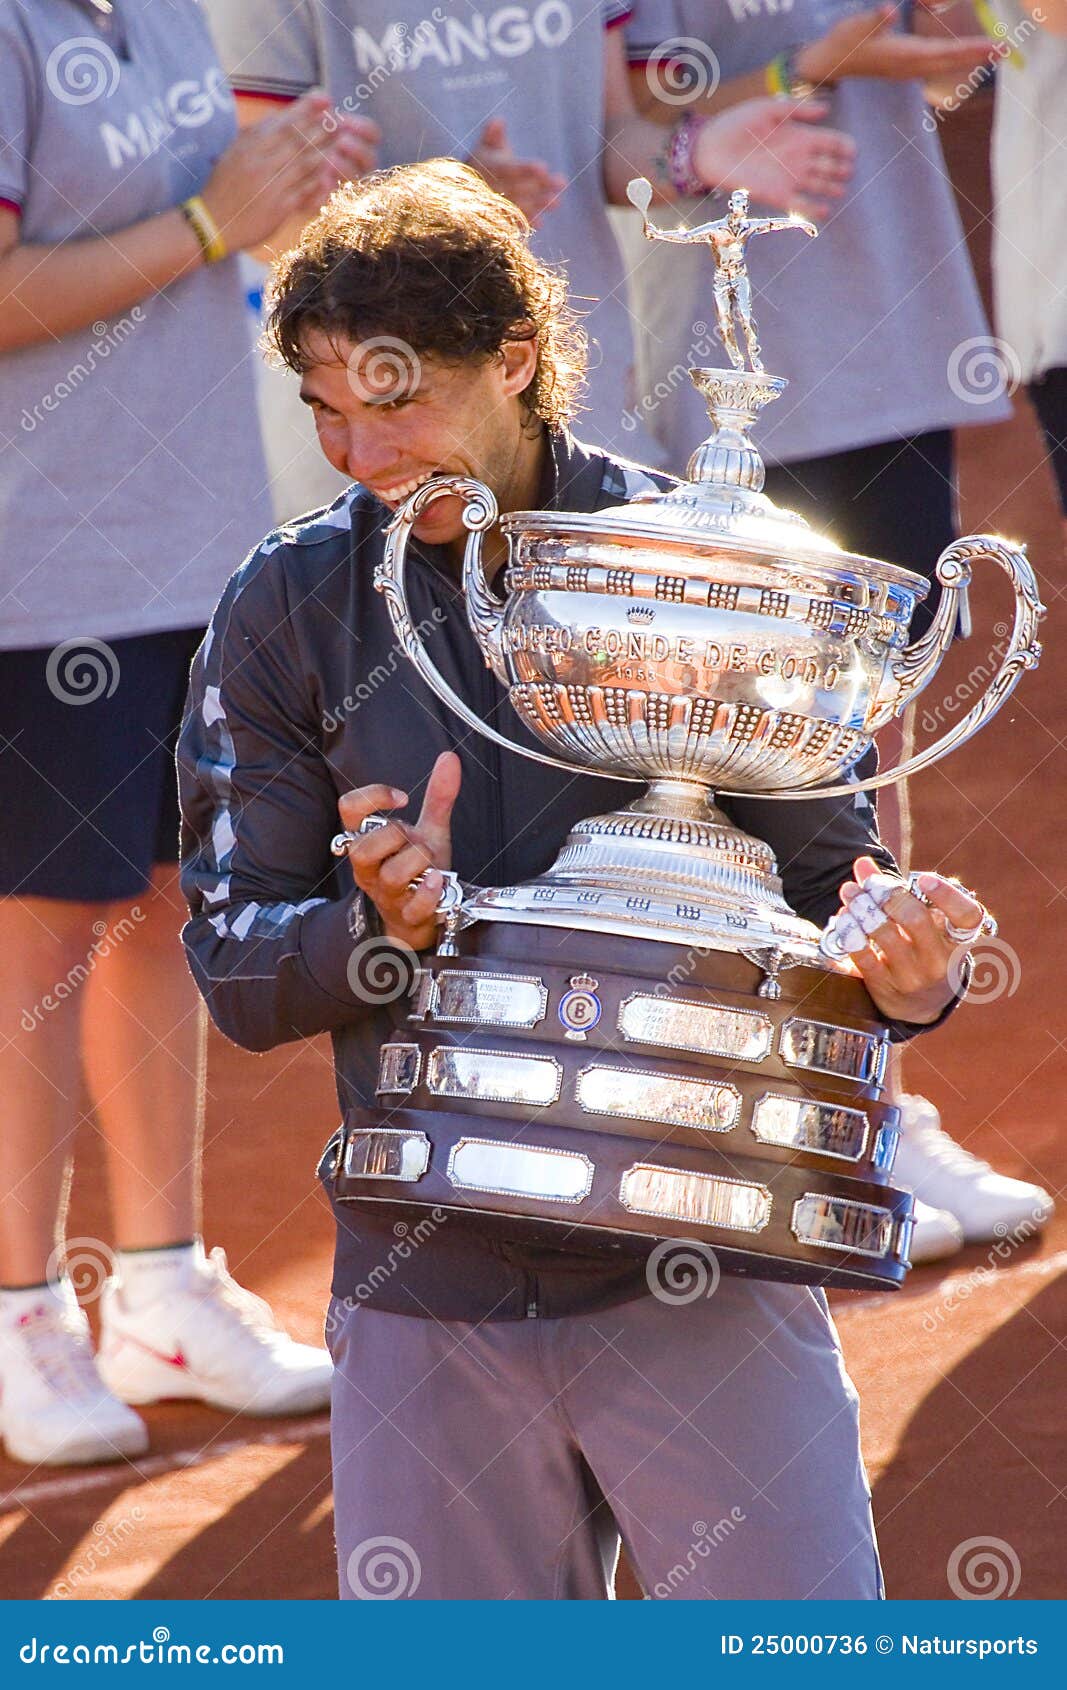 Rafael Nadal avec le trophée. BARCELONE - 29 AVRIL : Le joueur de tennis espagnol Rafael Nadal gagne le match final contre David Ferrer au tournoi Conde de Godo de tennis de Barcelone le 29 avril 2012, à Barcelone, l'Espagne.